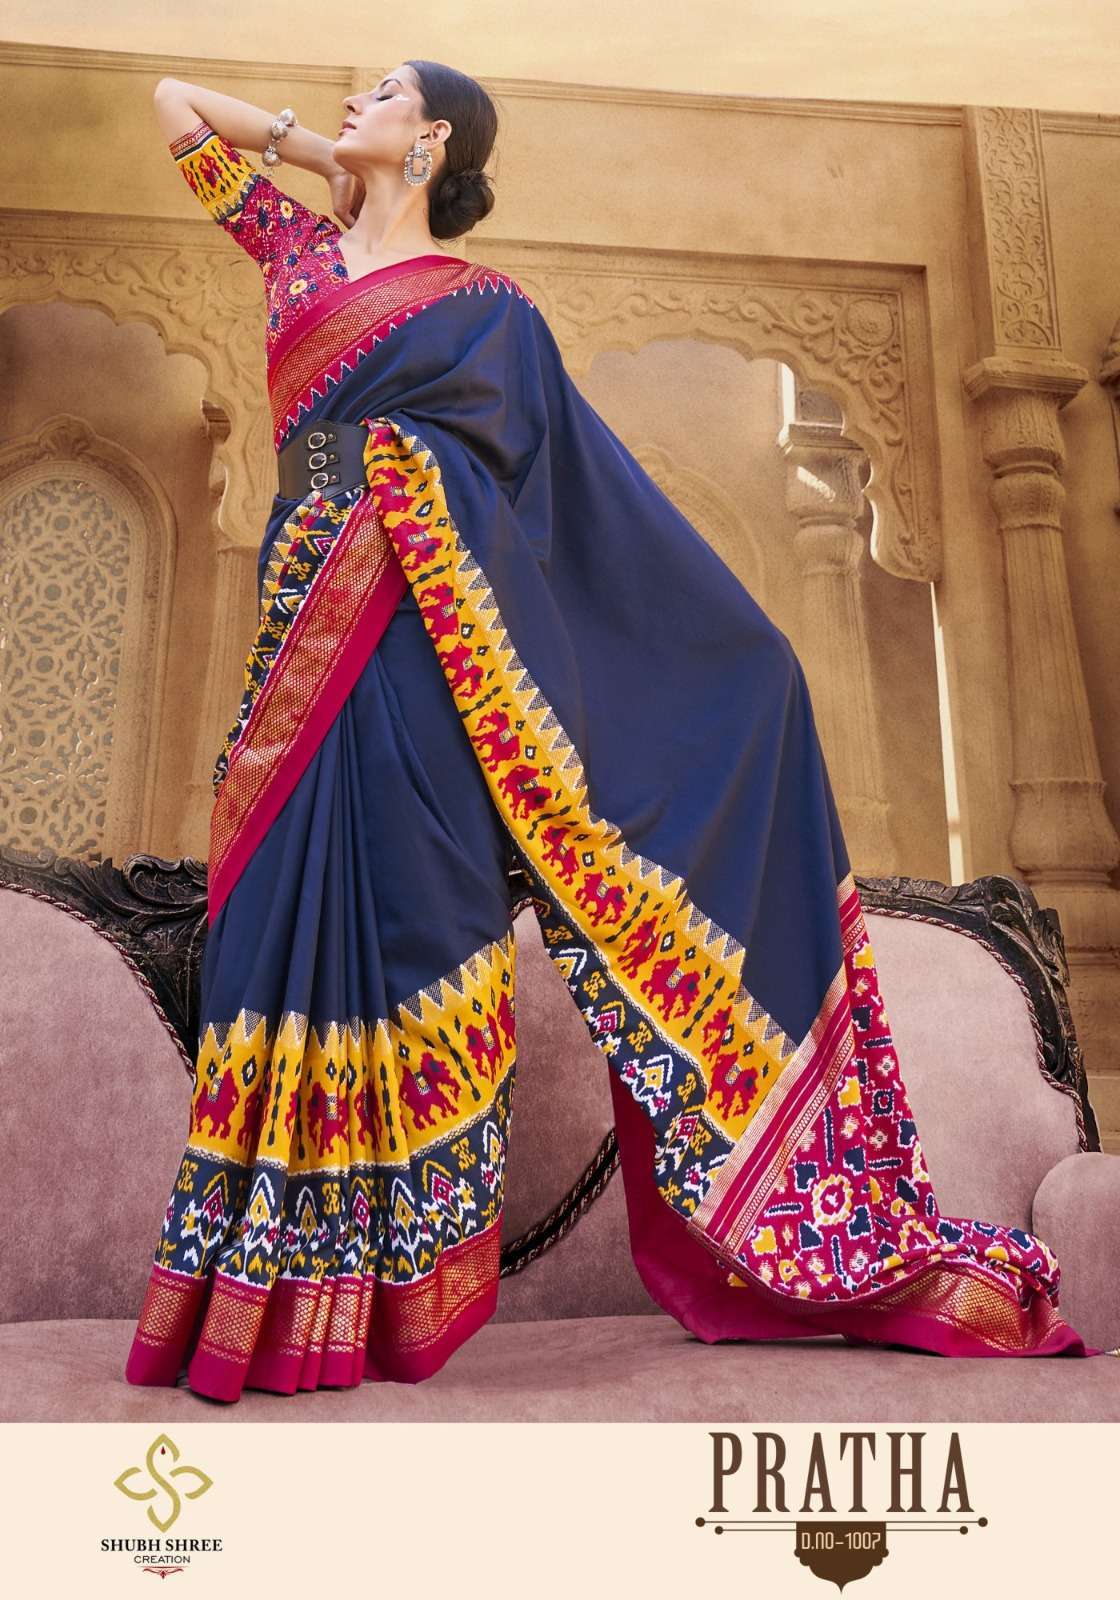 shubh shree creation pratha series 1001-1009 velvet tussar silk saree